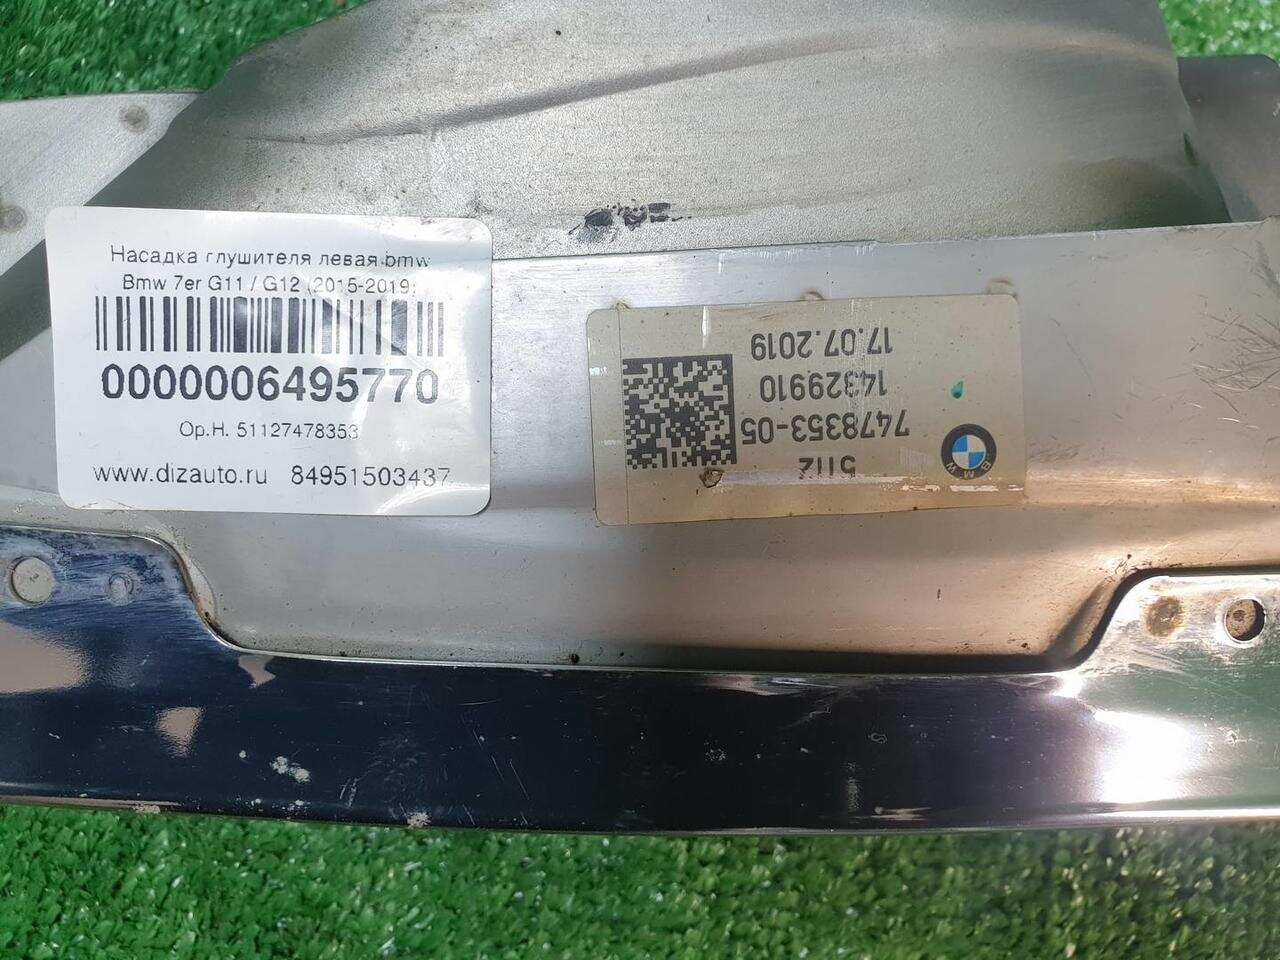 Насадка глушителя левая BMW 7ER G11 / G12 (2015-2019) 51127478353 0000006495770